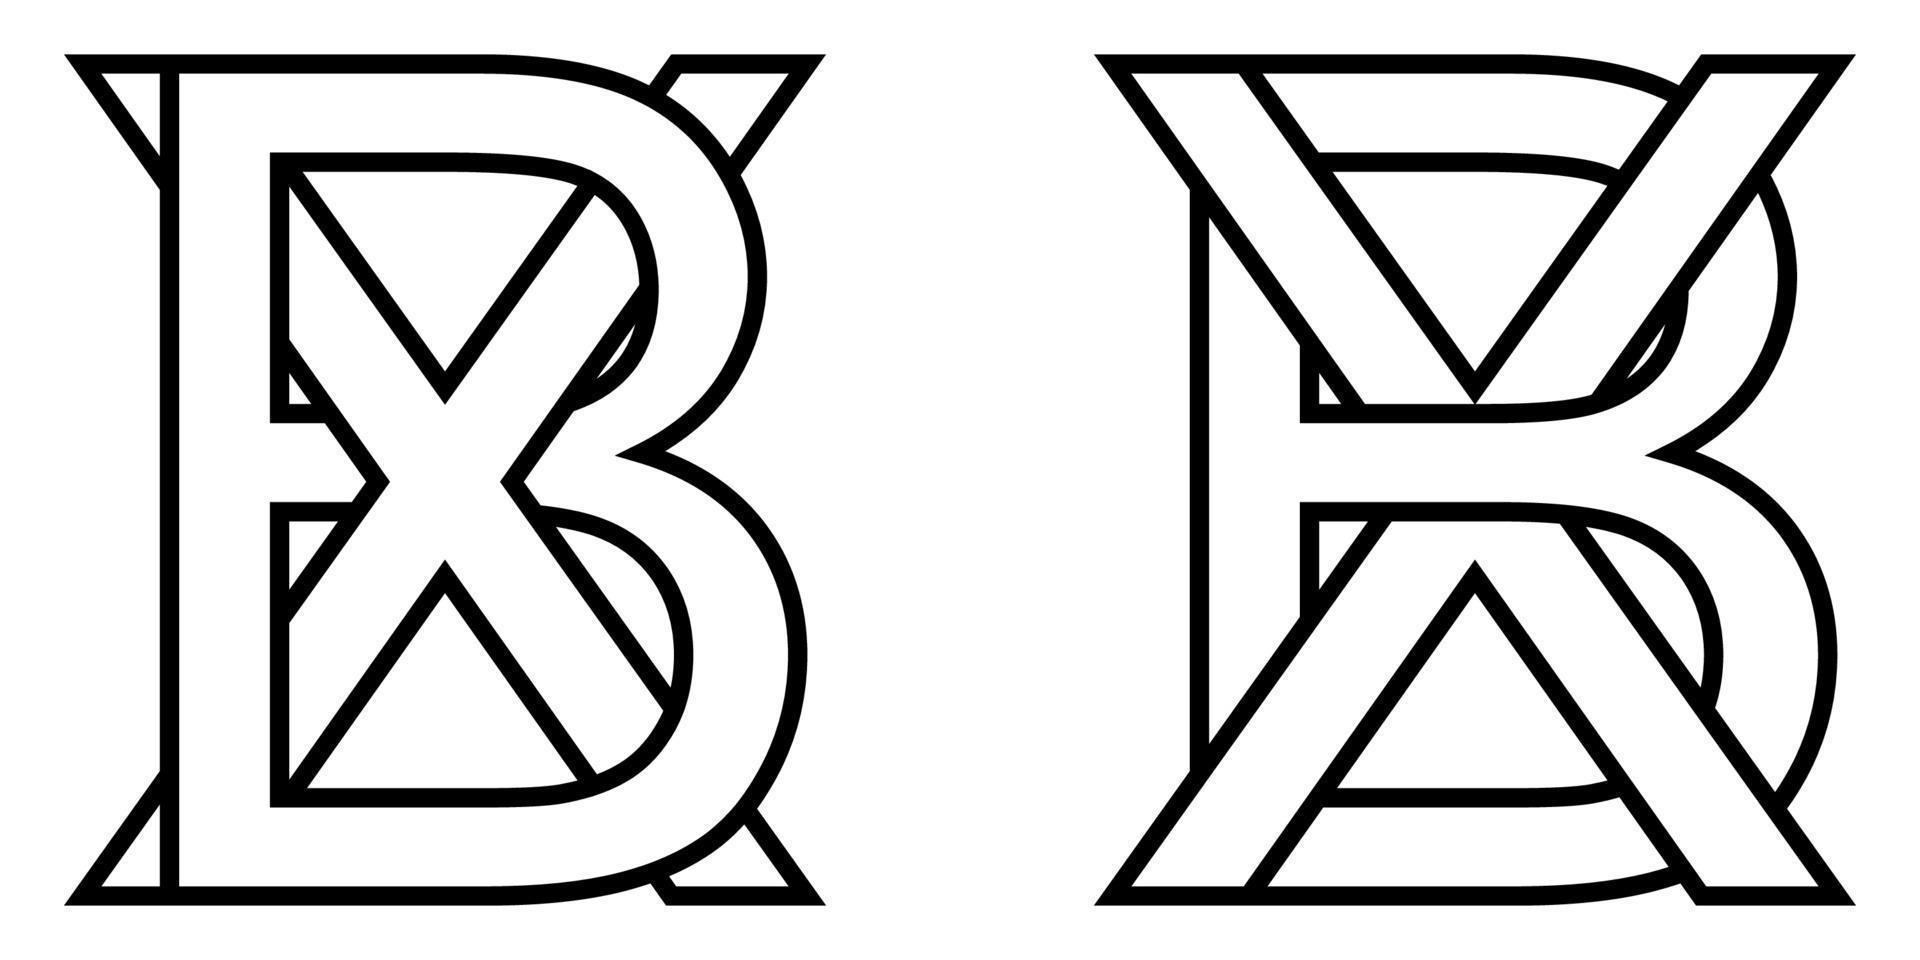 logo firmar bx xb icono firmar dos entrelazado letras b, X vector logo bx, xb primero capital letras modelo alfabeto b, X